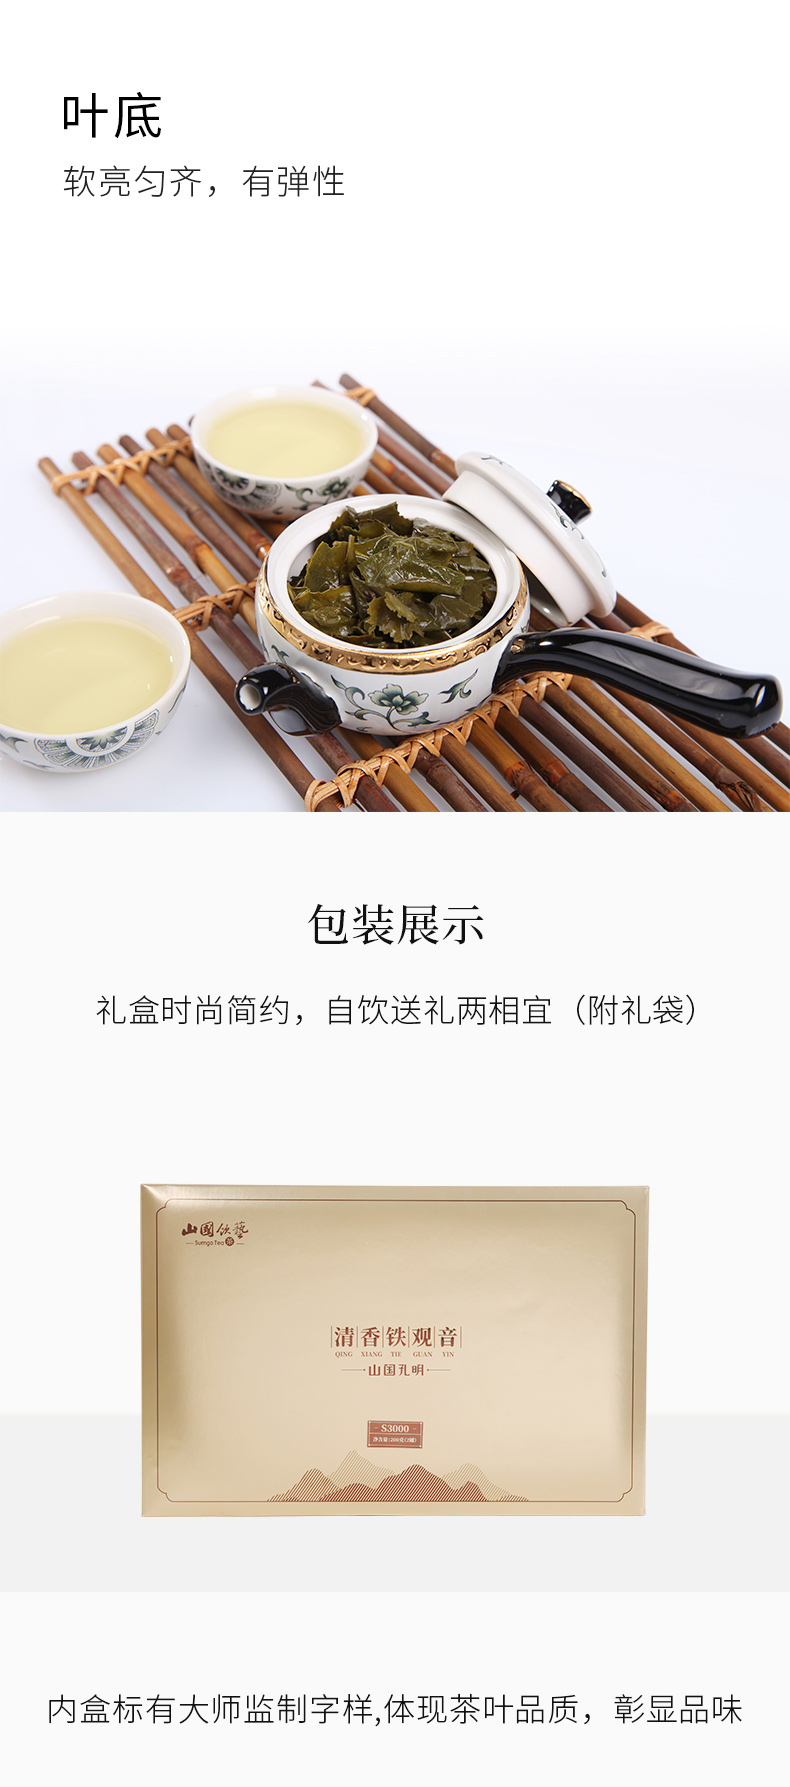 【山国孔明S3000-200g】安溪铁观音 清香型乌龙茶 礼盒装(图5)